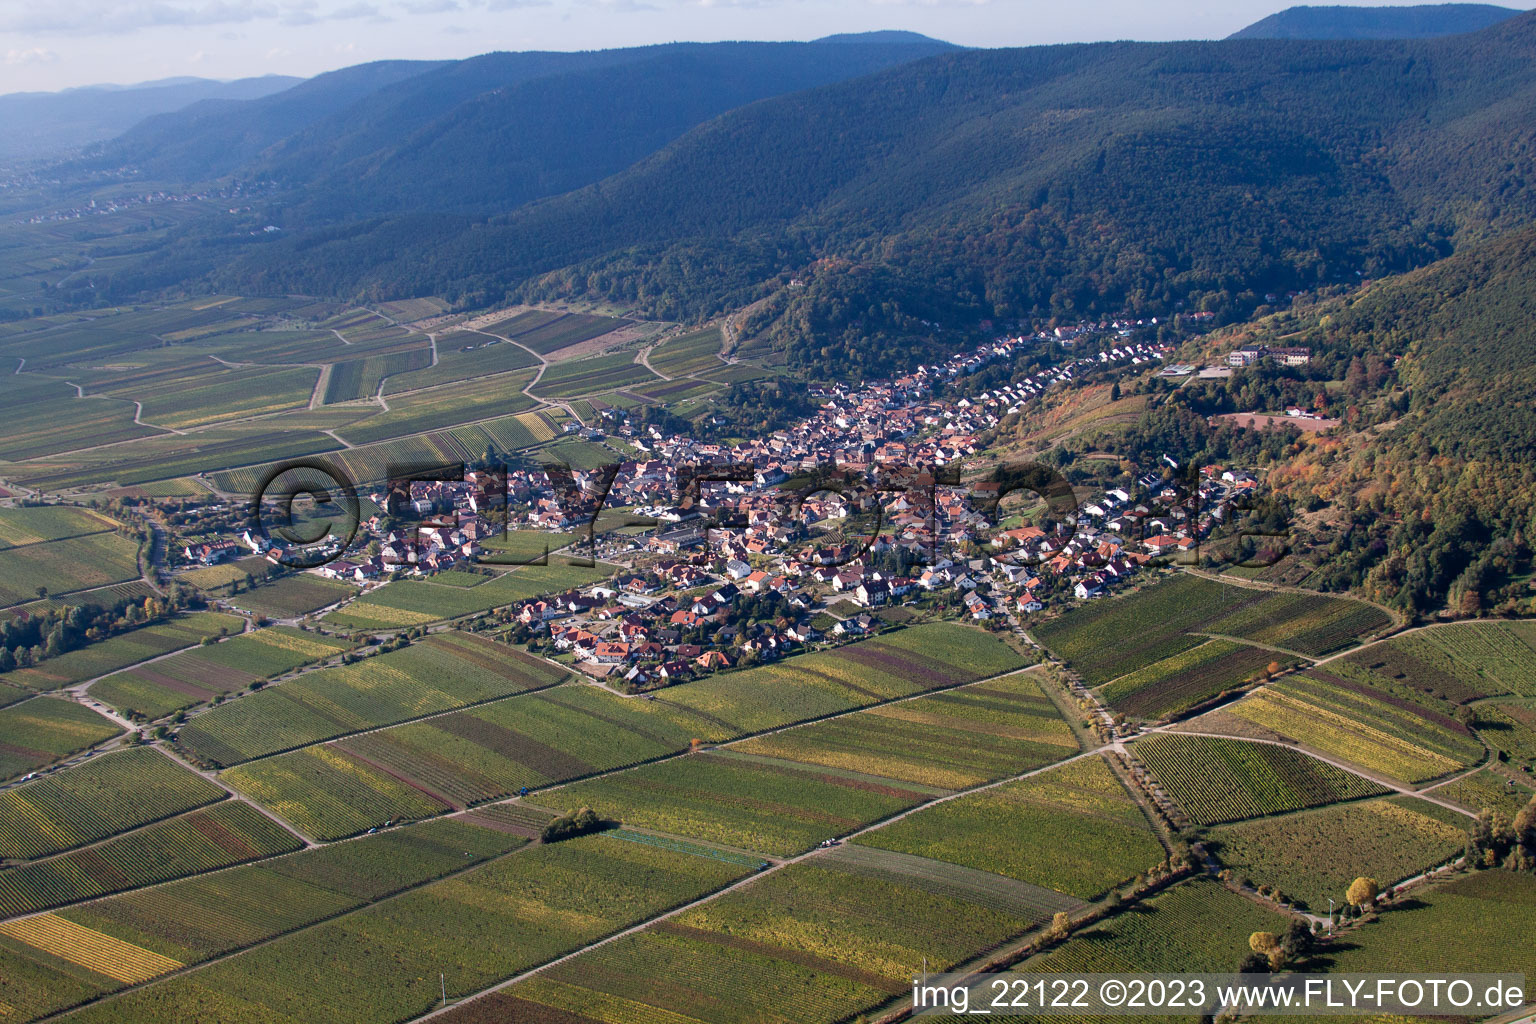 Maikammer dans le département Rhénanie-Palatinat, Allemagne vue d'en haut